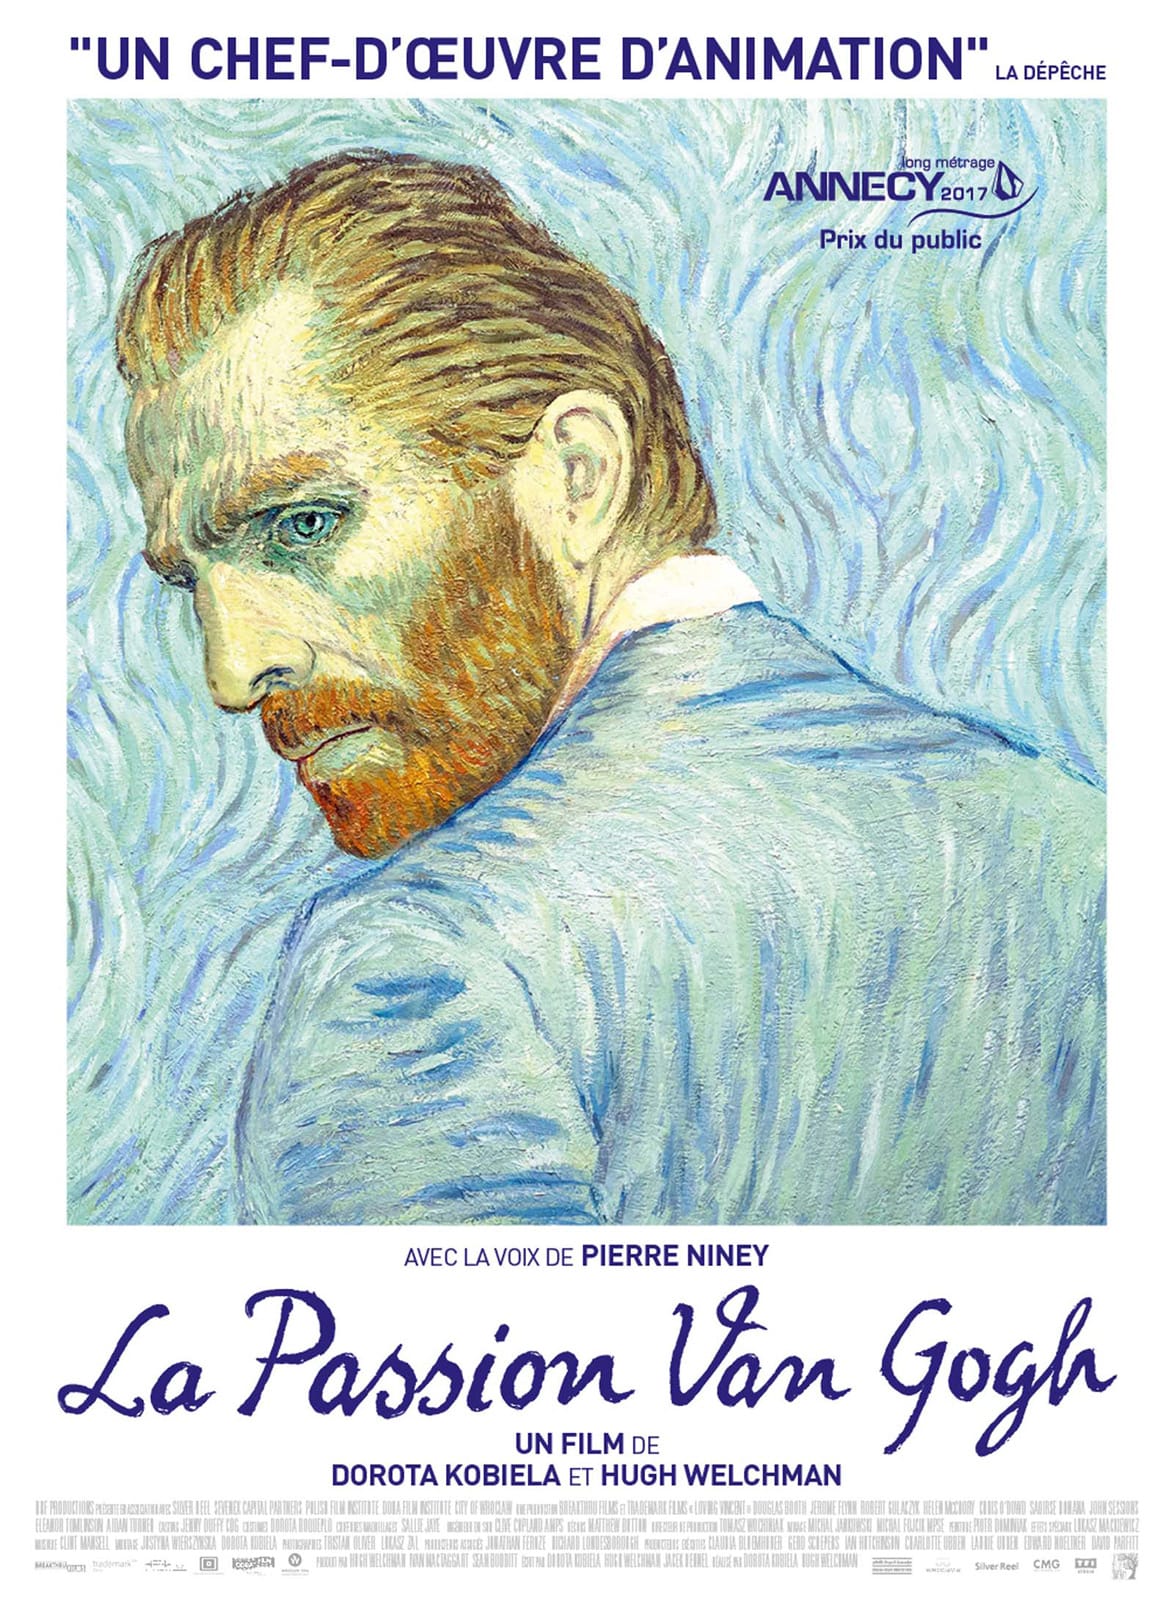 La Passion Van Gogh de Dorota Kobiela et Hugh Welchman affiche film d'animation cinéma